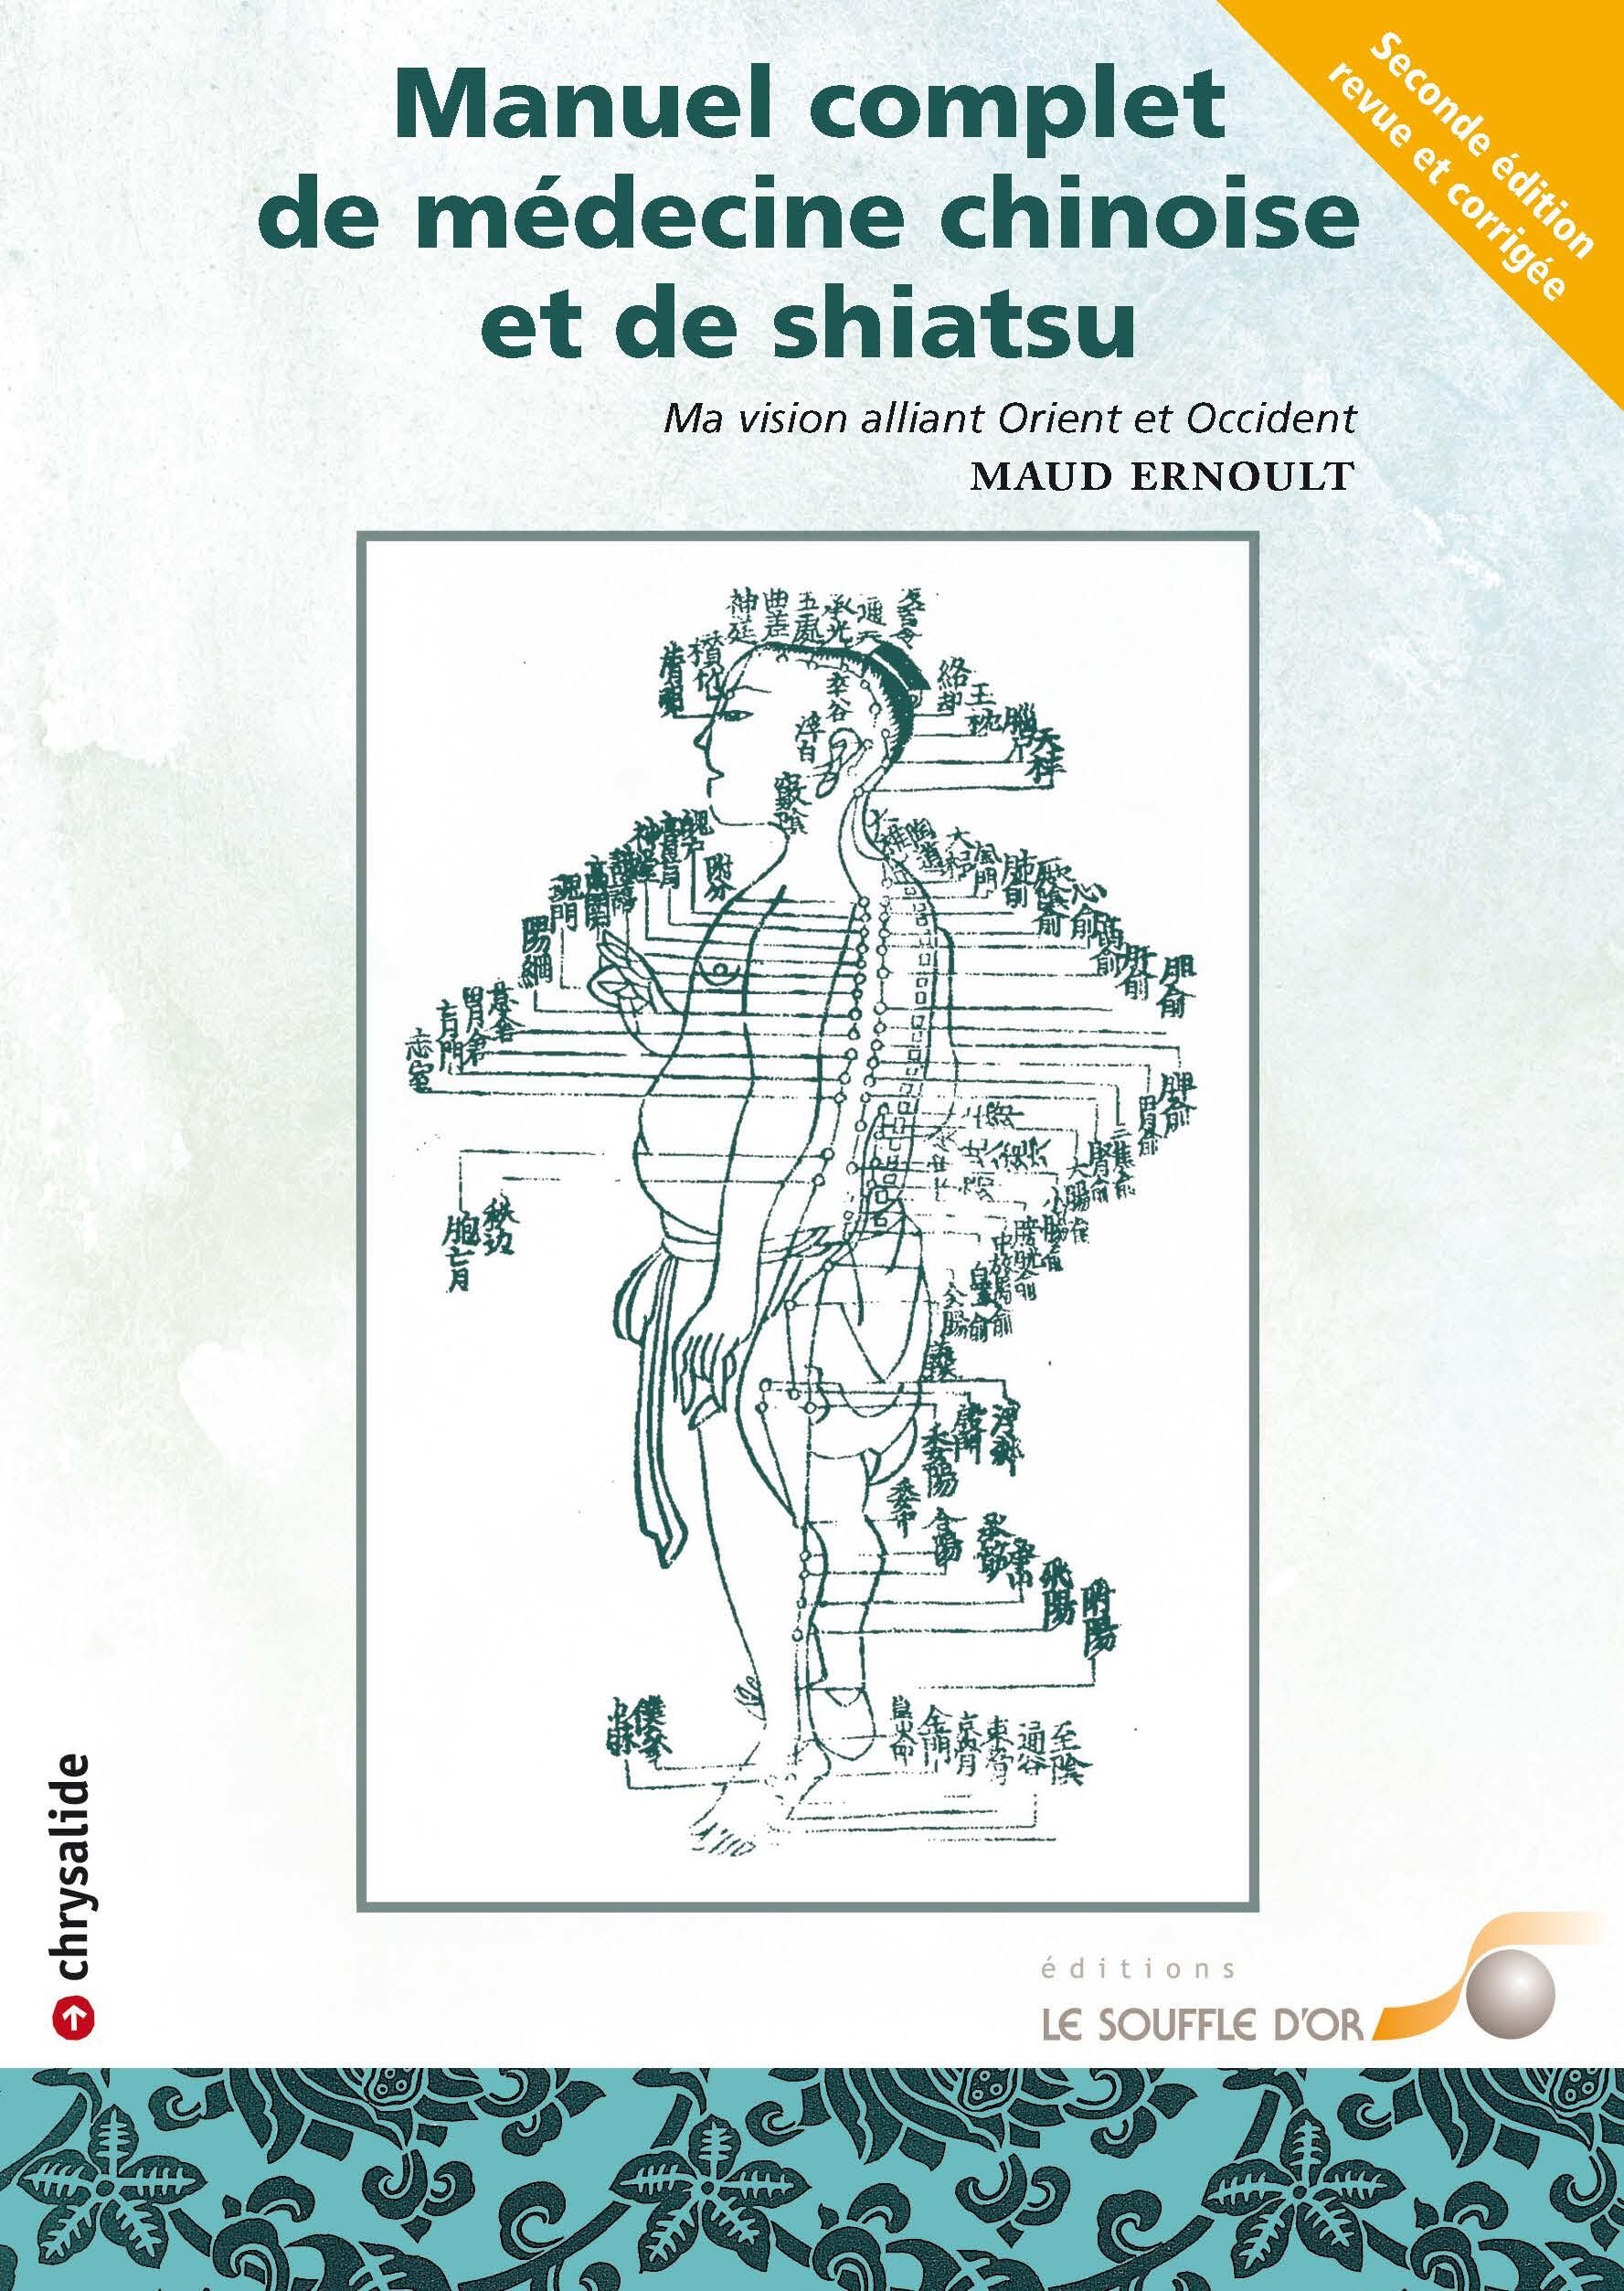 Manuel complet de médecine chinoise et de shiatsu (2e édition)